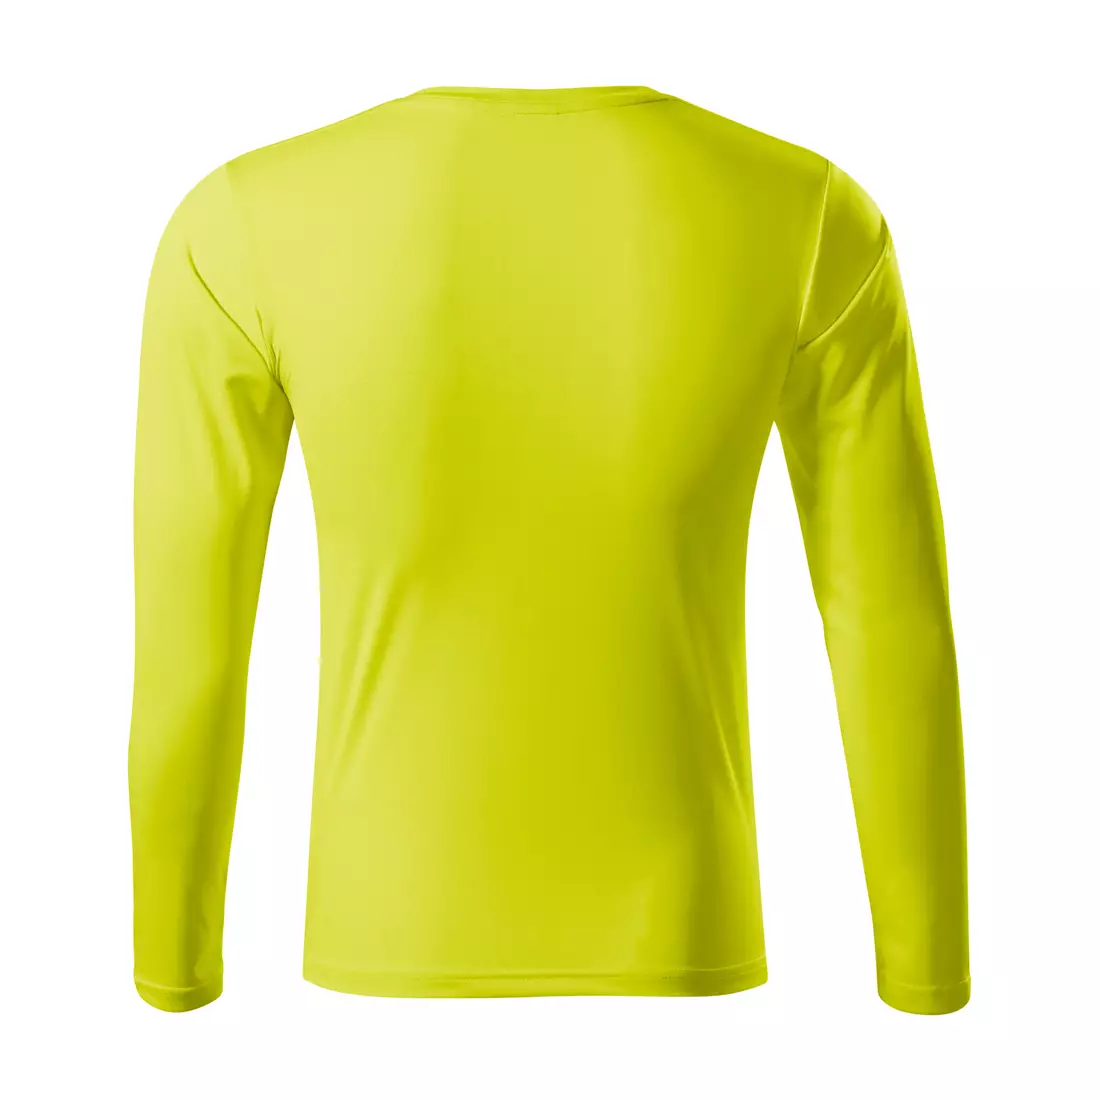 MALFINI PRIDE Pánská sportovní dlouhý rukáv tričko, neonově žlutá 1689012